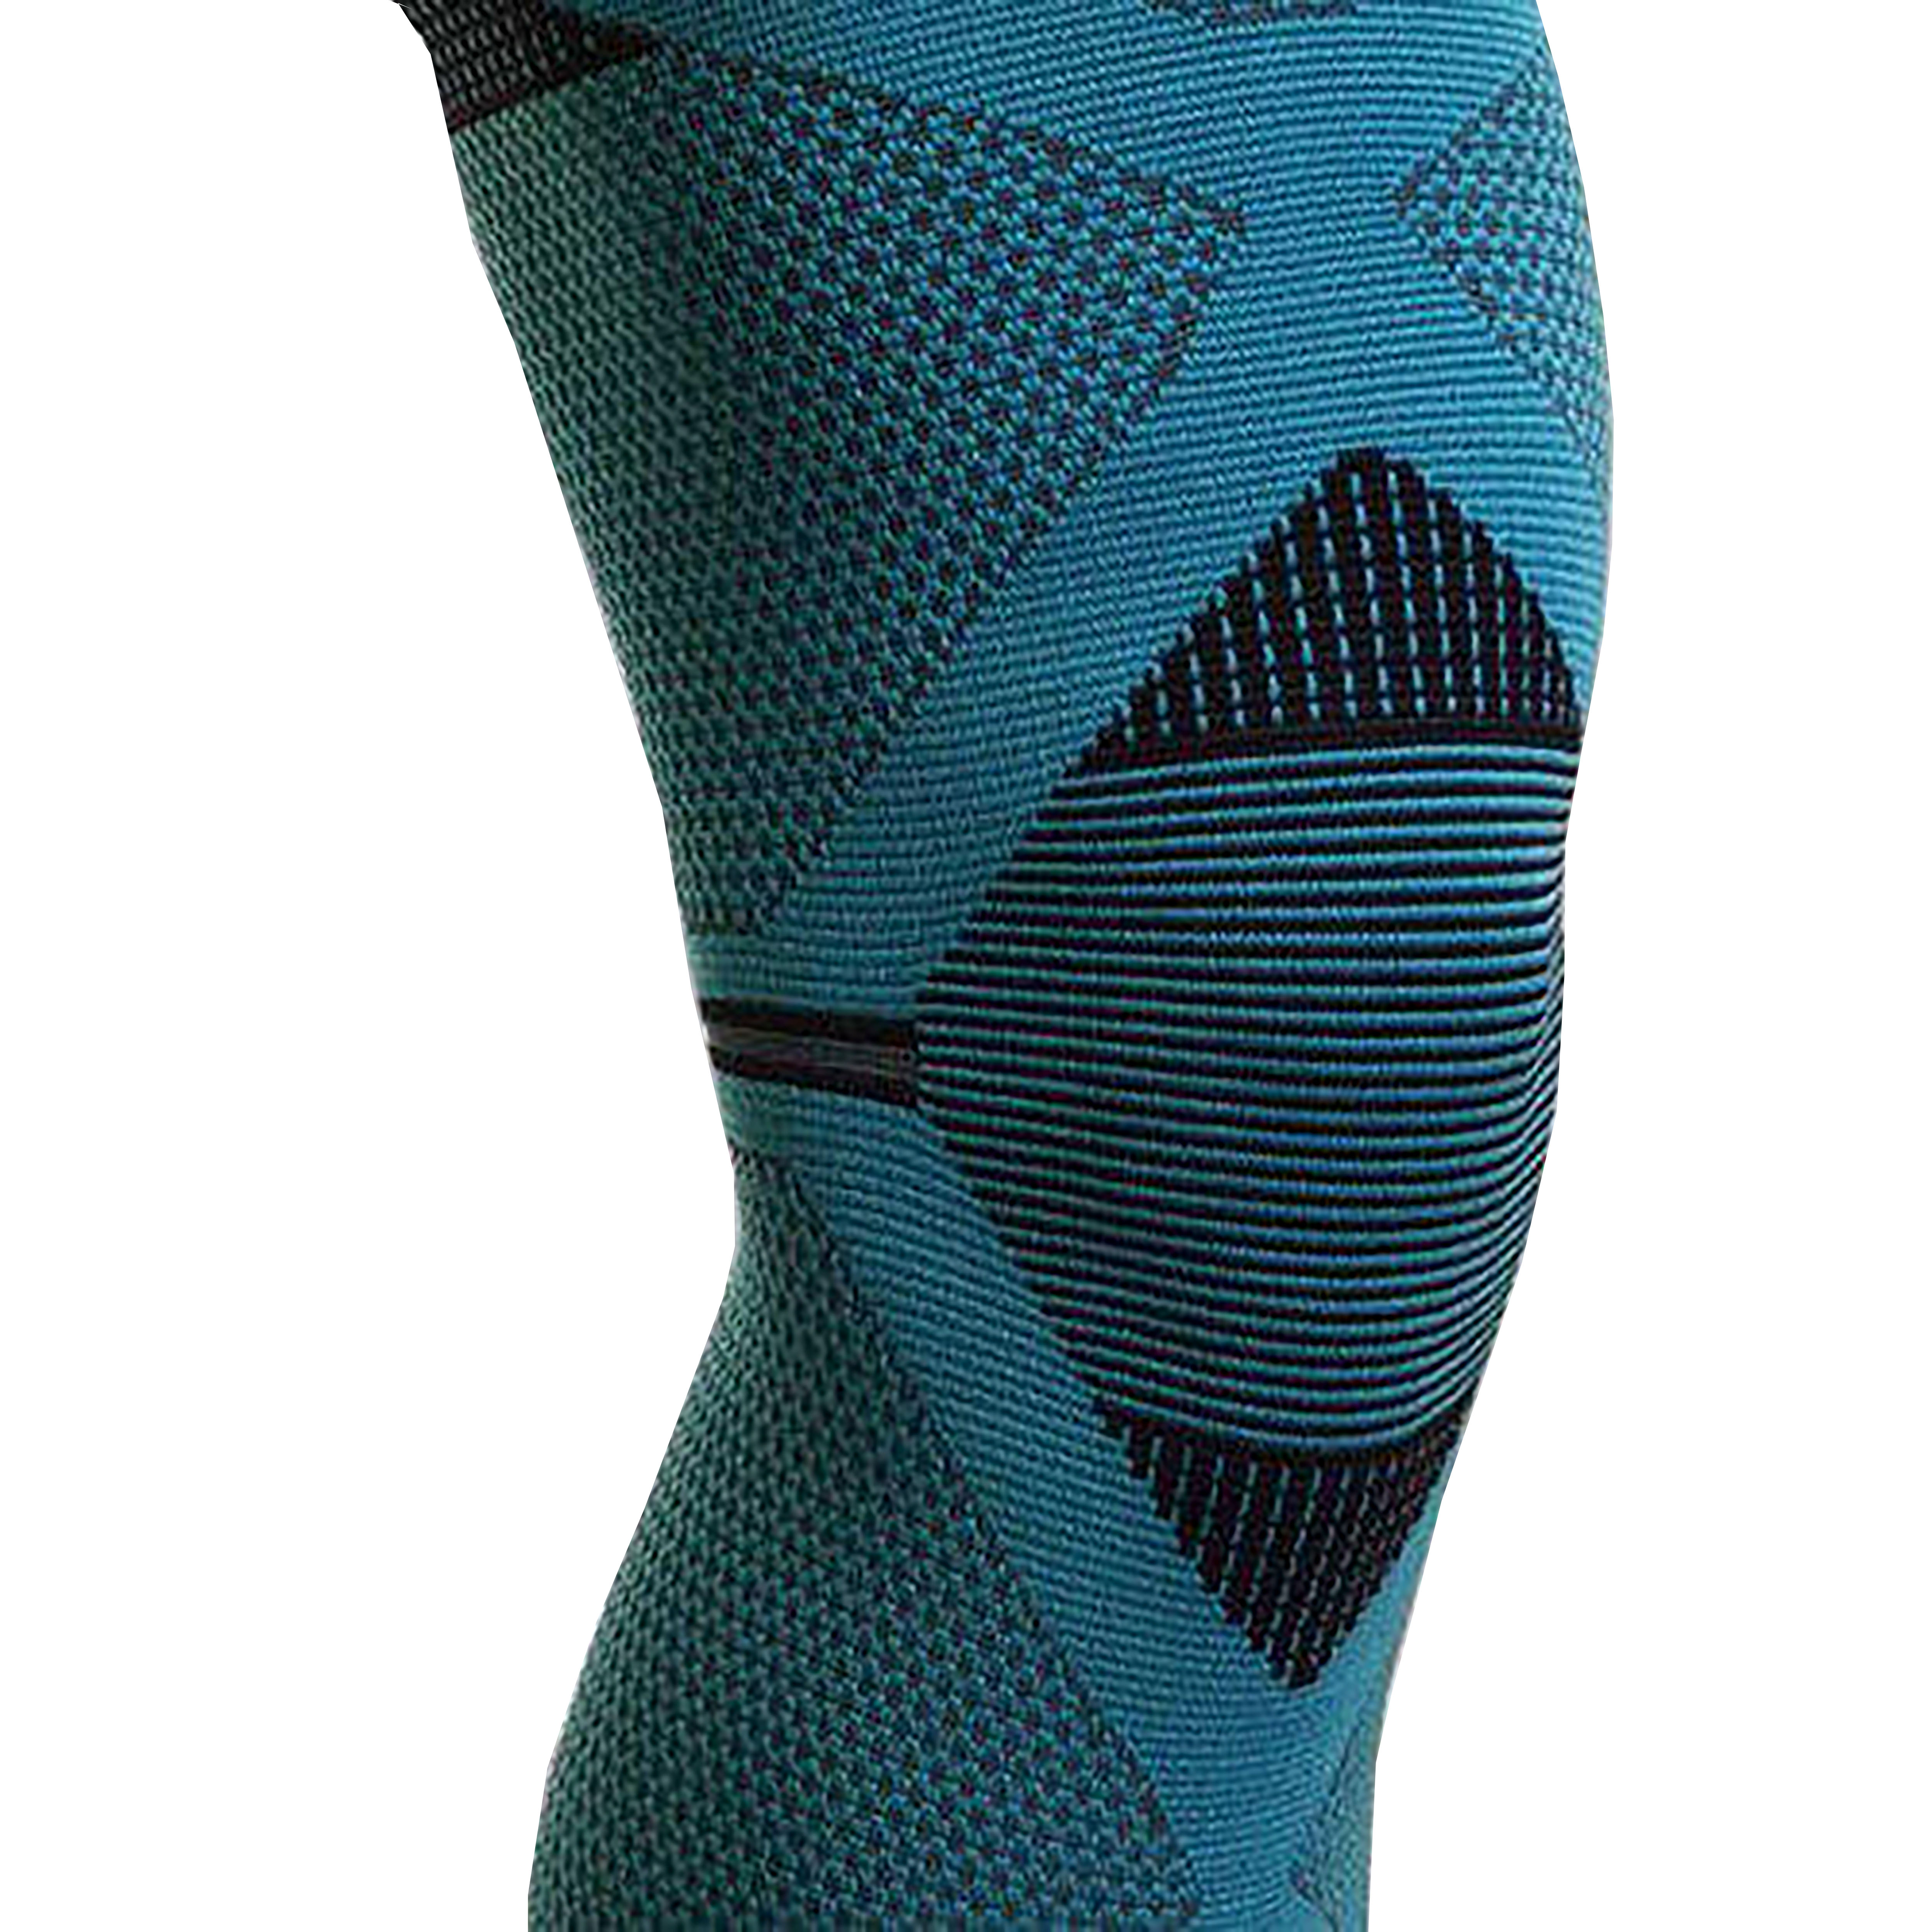 Đai hỗ trợ đầu gối cao cấp cho thể thao - DYNA Knee Cap Premium Grey/Black